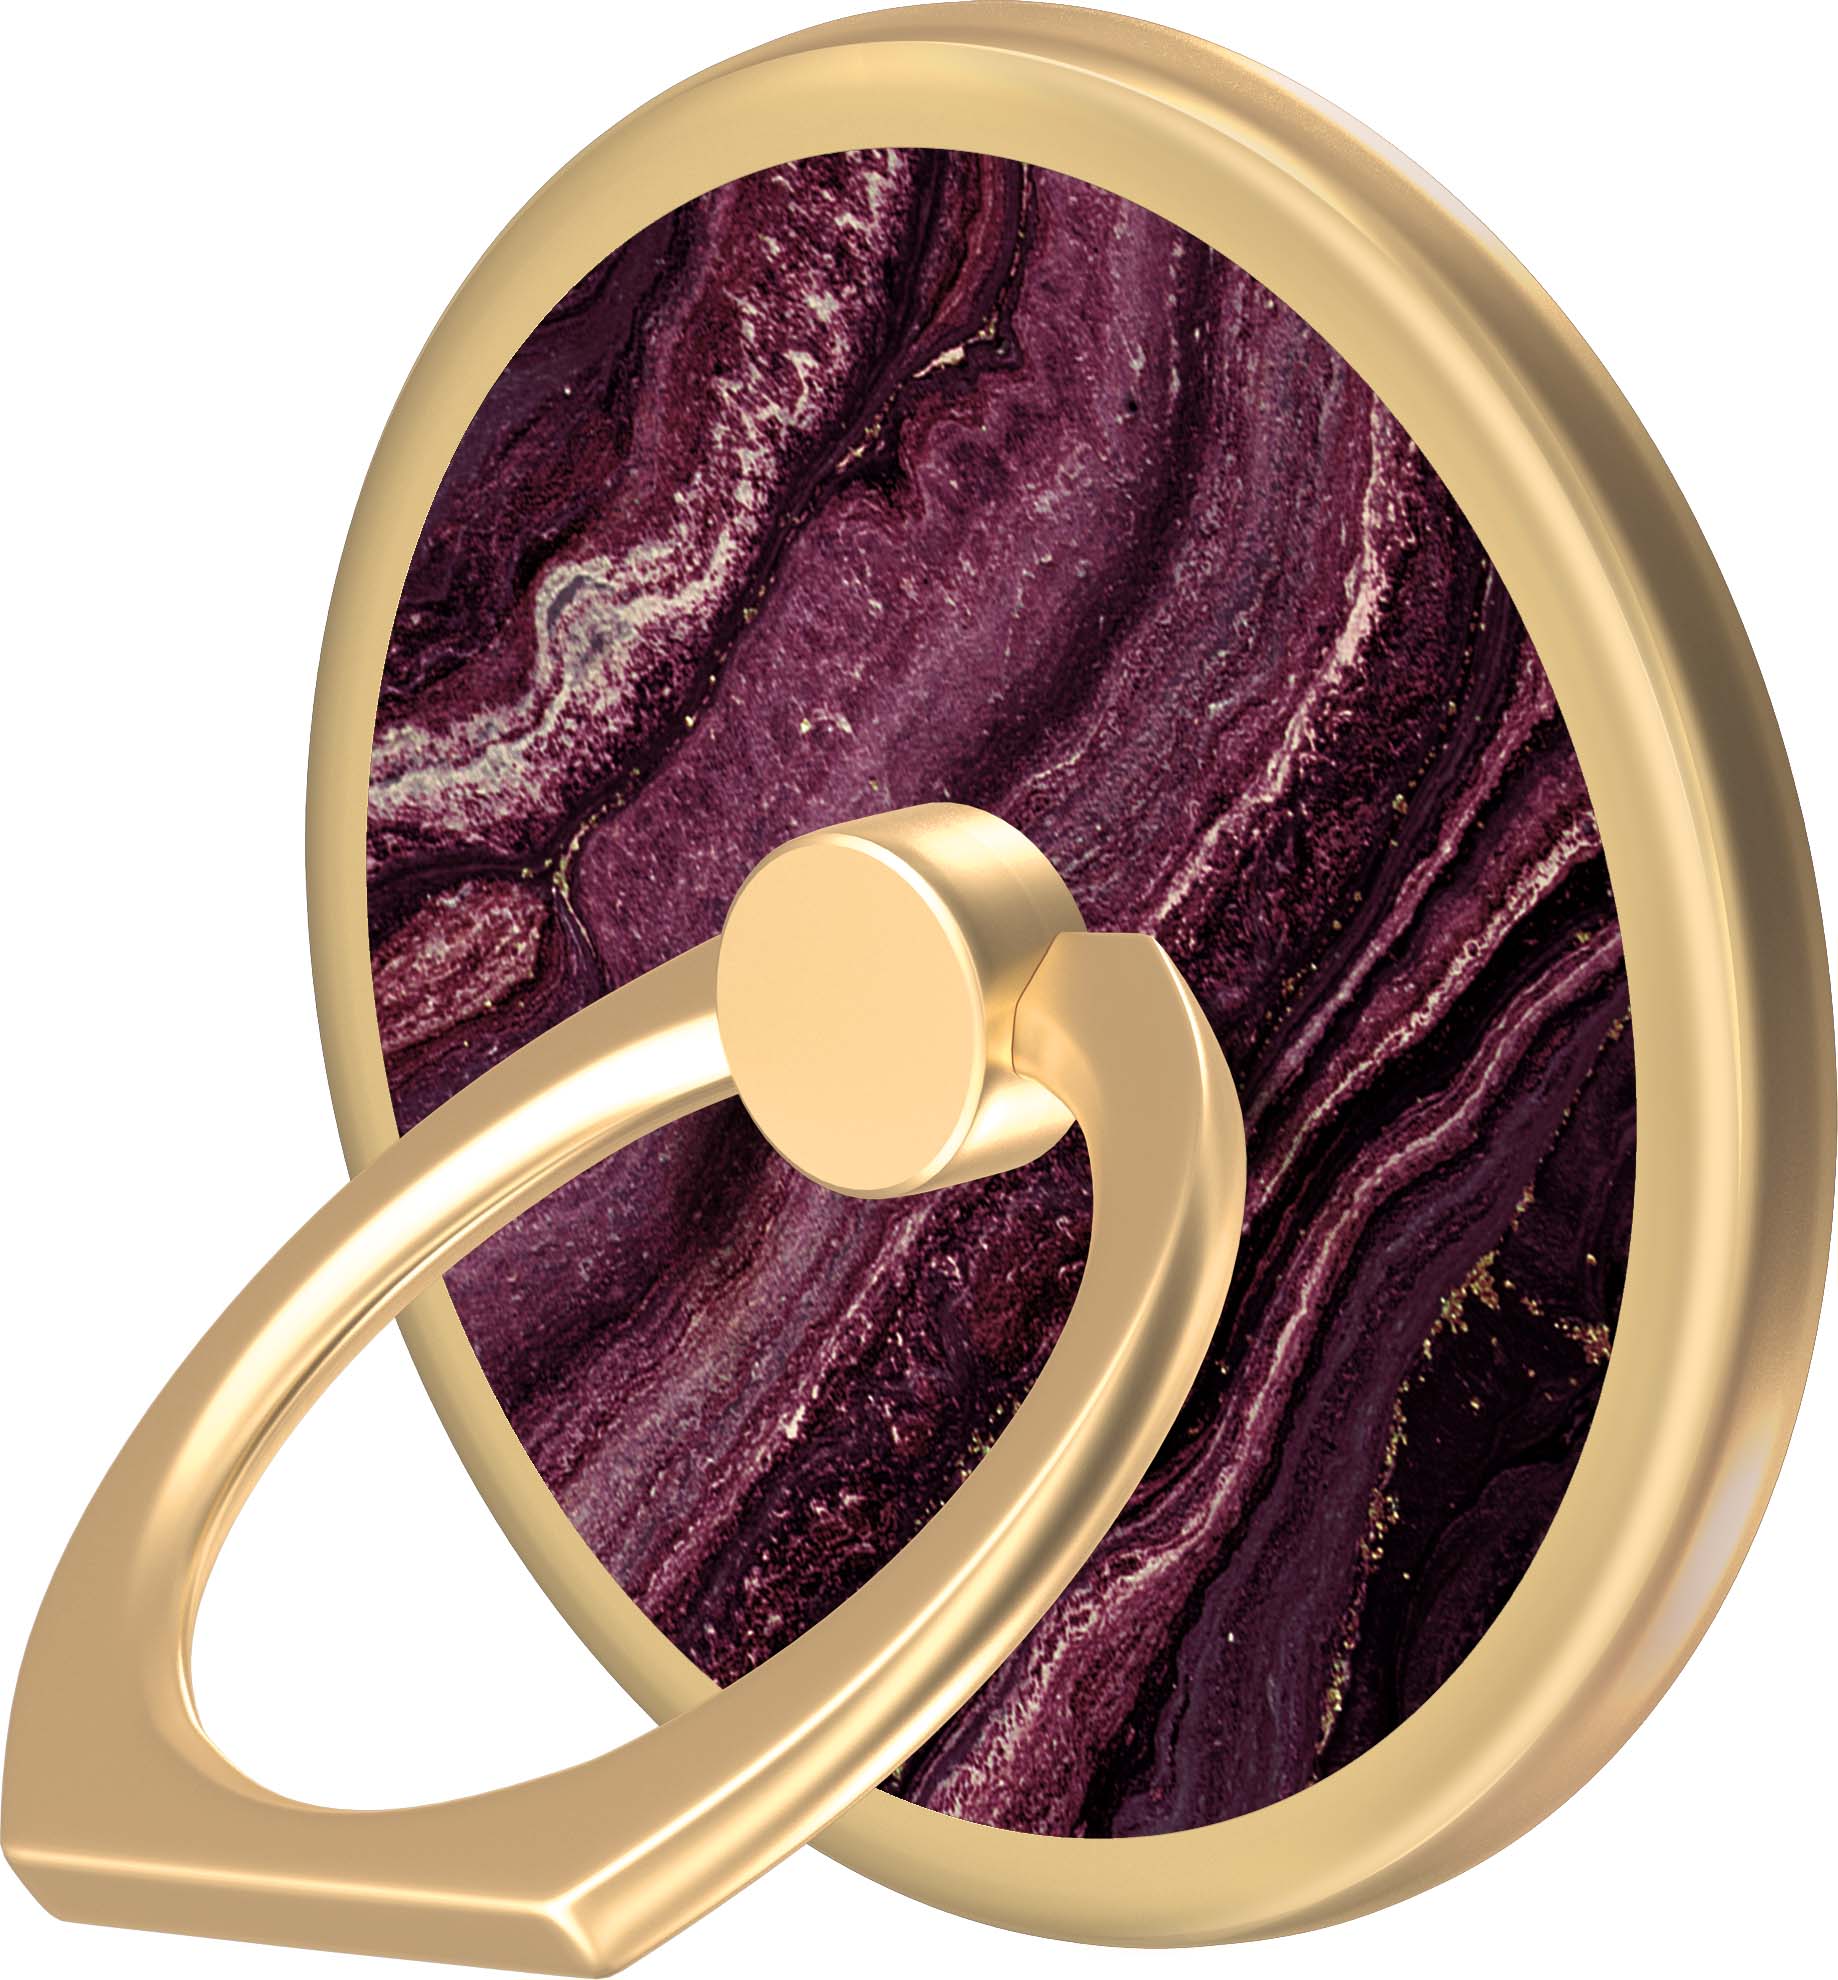 of Sweden Magnetic Ring Golden Plum | lyko.com